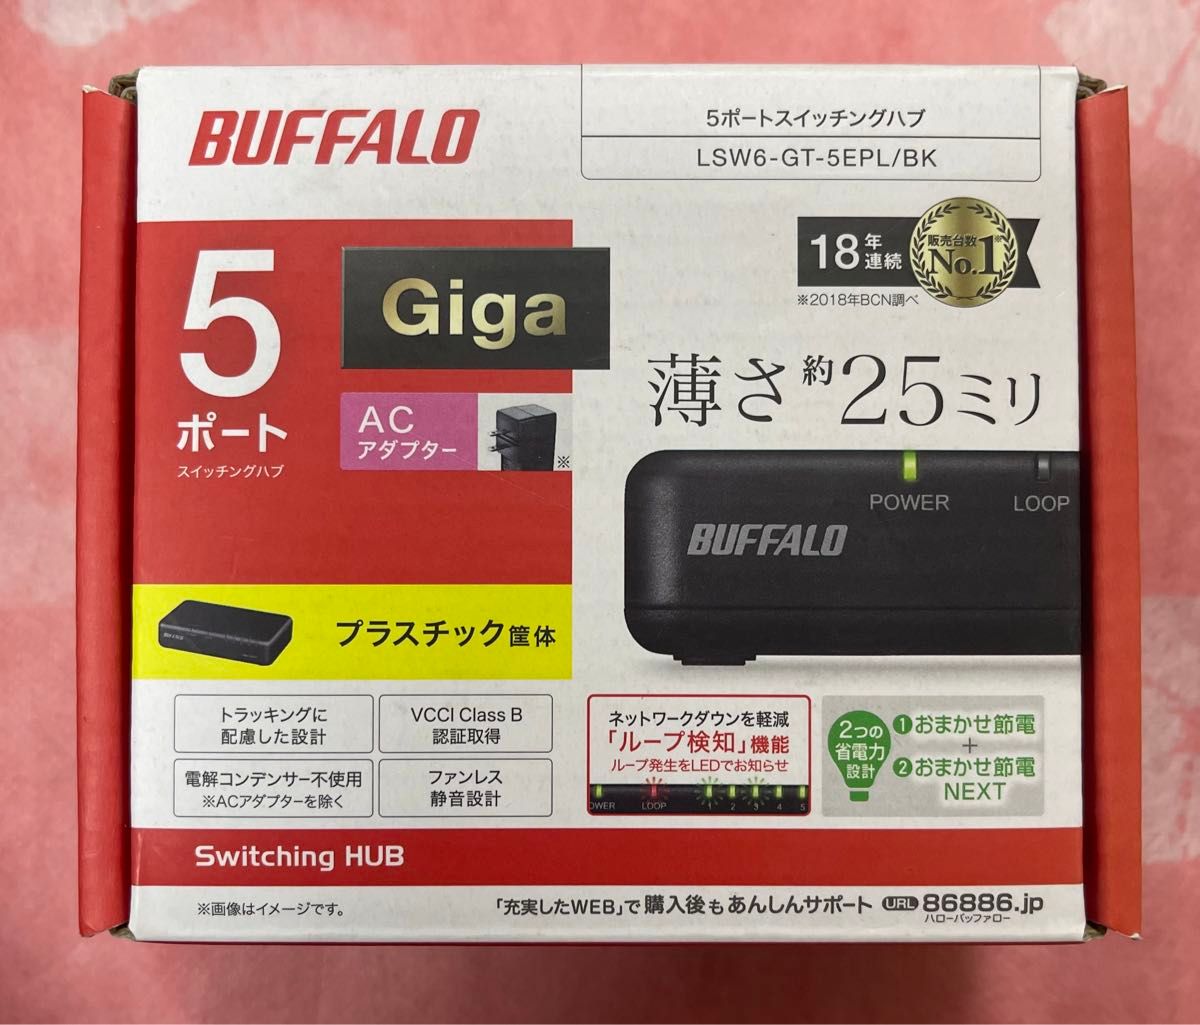 新品・BUFFALO Giga対応 プラスチック筐体 電源内蔵 5ポート LSW6-GT-5EPL/BK ブラック 